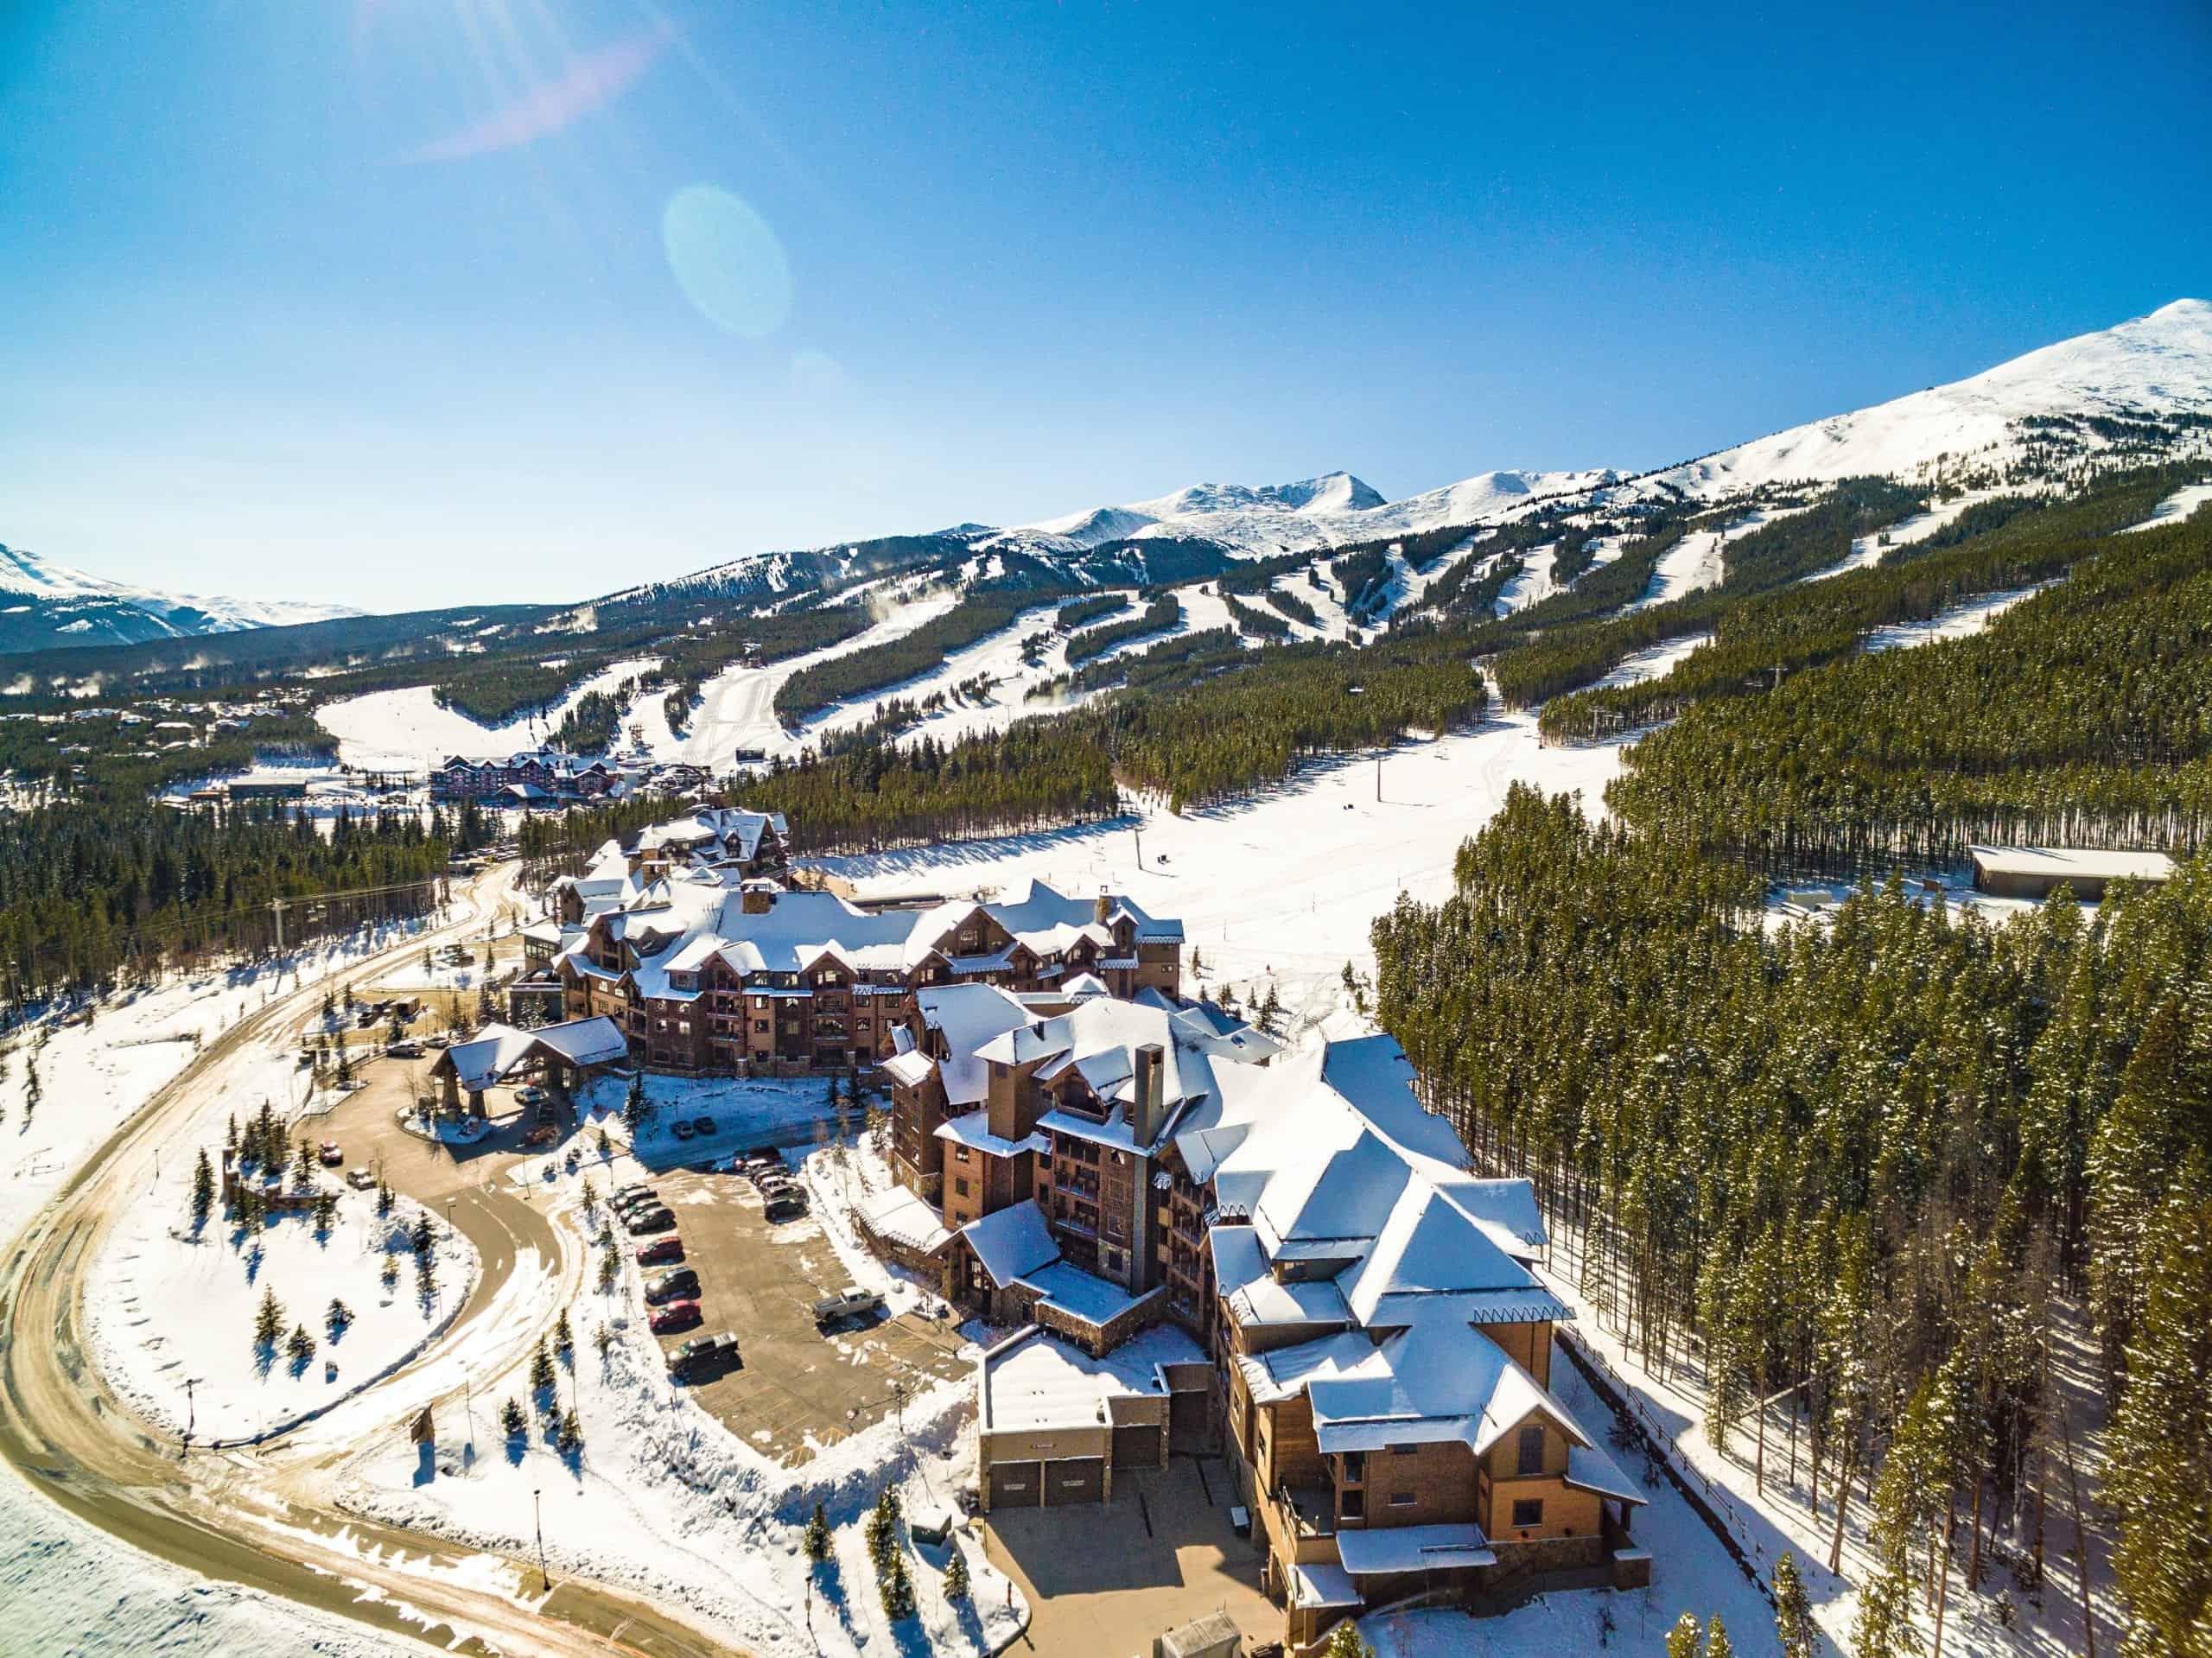 7 Best Ski Resorts in Colorado